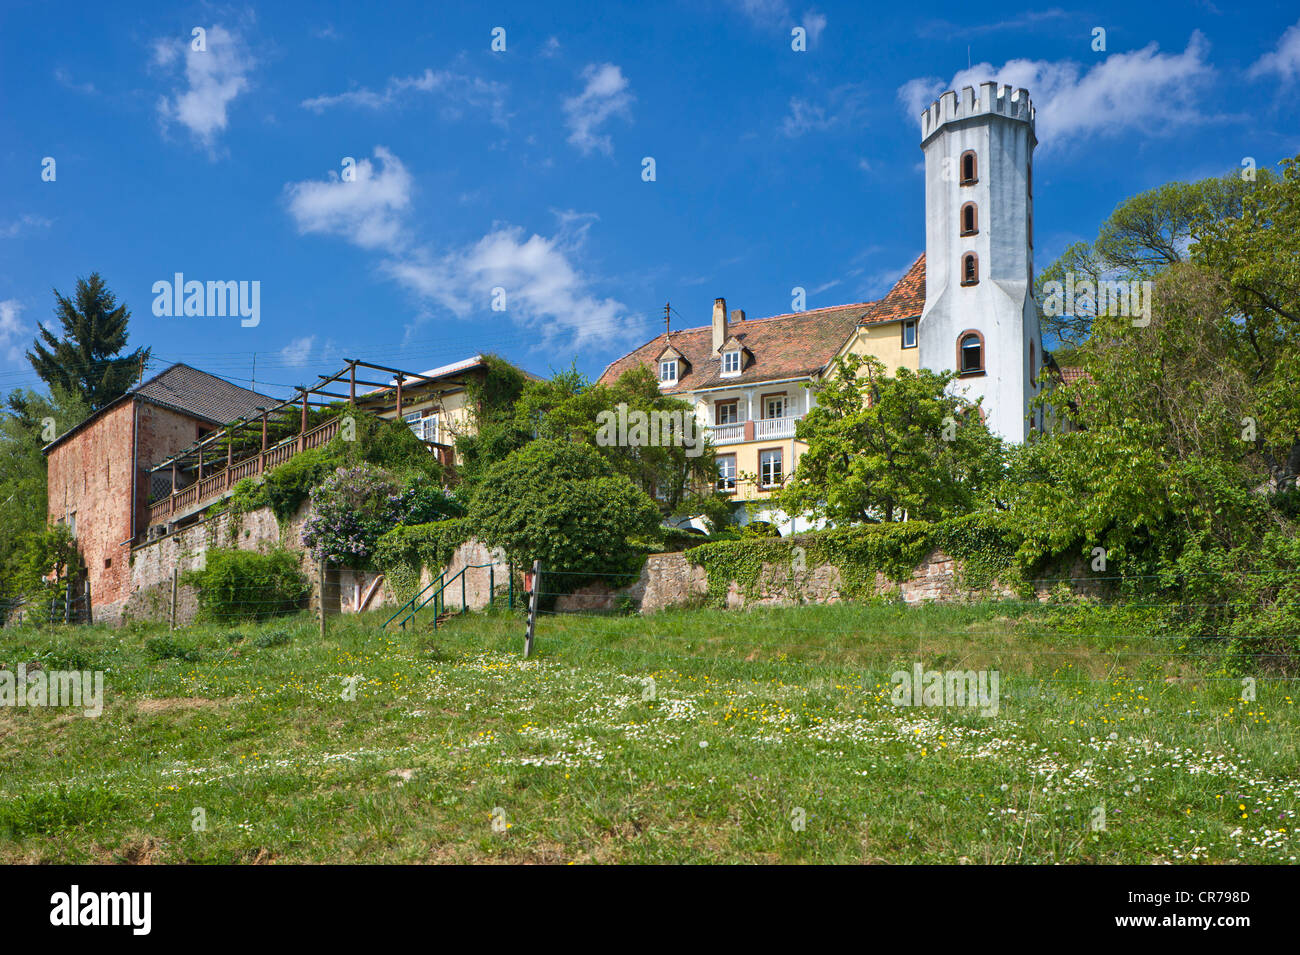 Slevogthof, Leinsweiler, Suedliche Weinstrasse district, Palatinate region, Rhineland-Palatinate, Germany, Europe Stock Photo